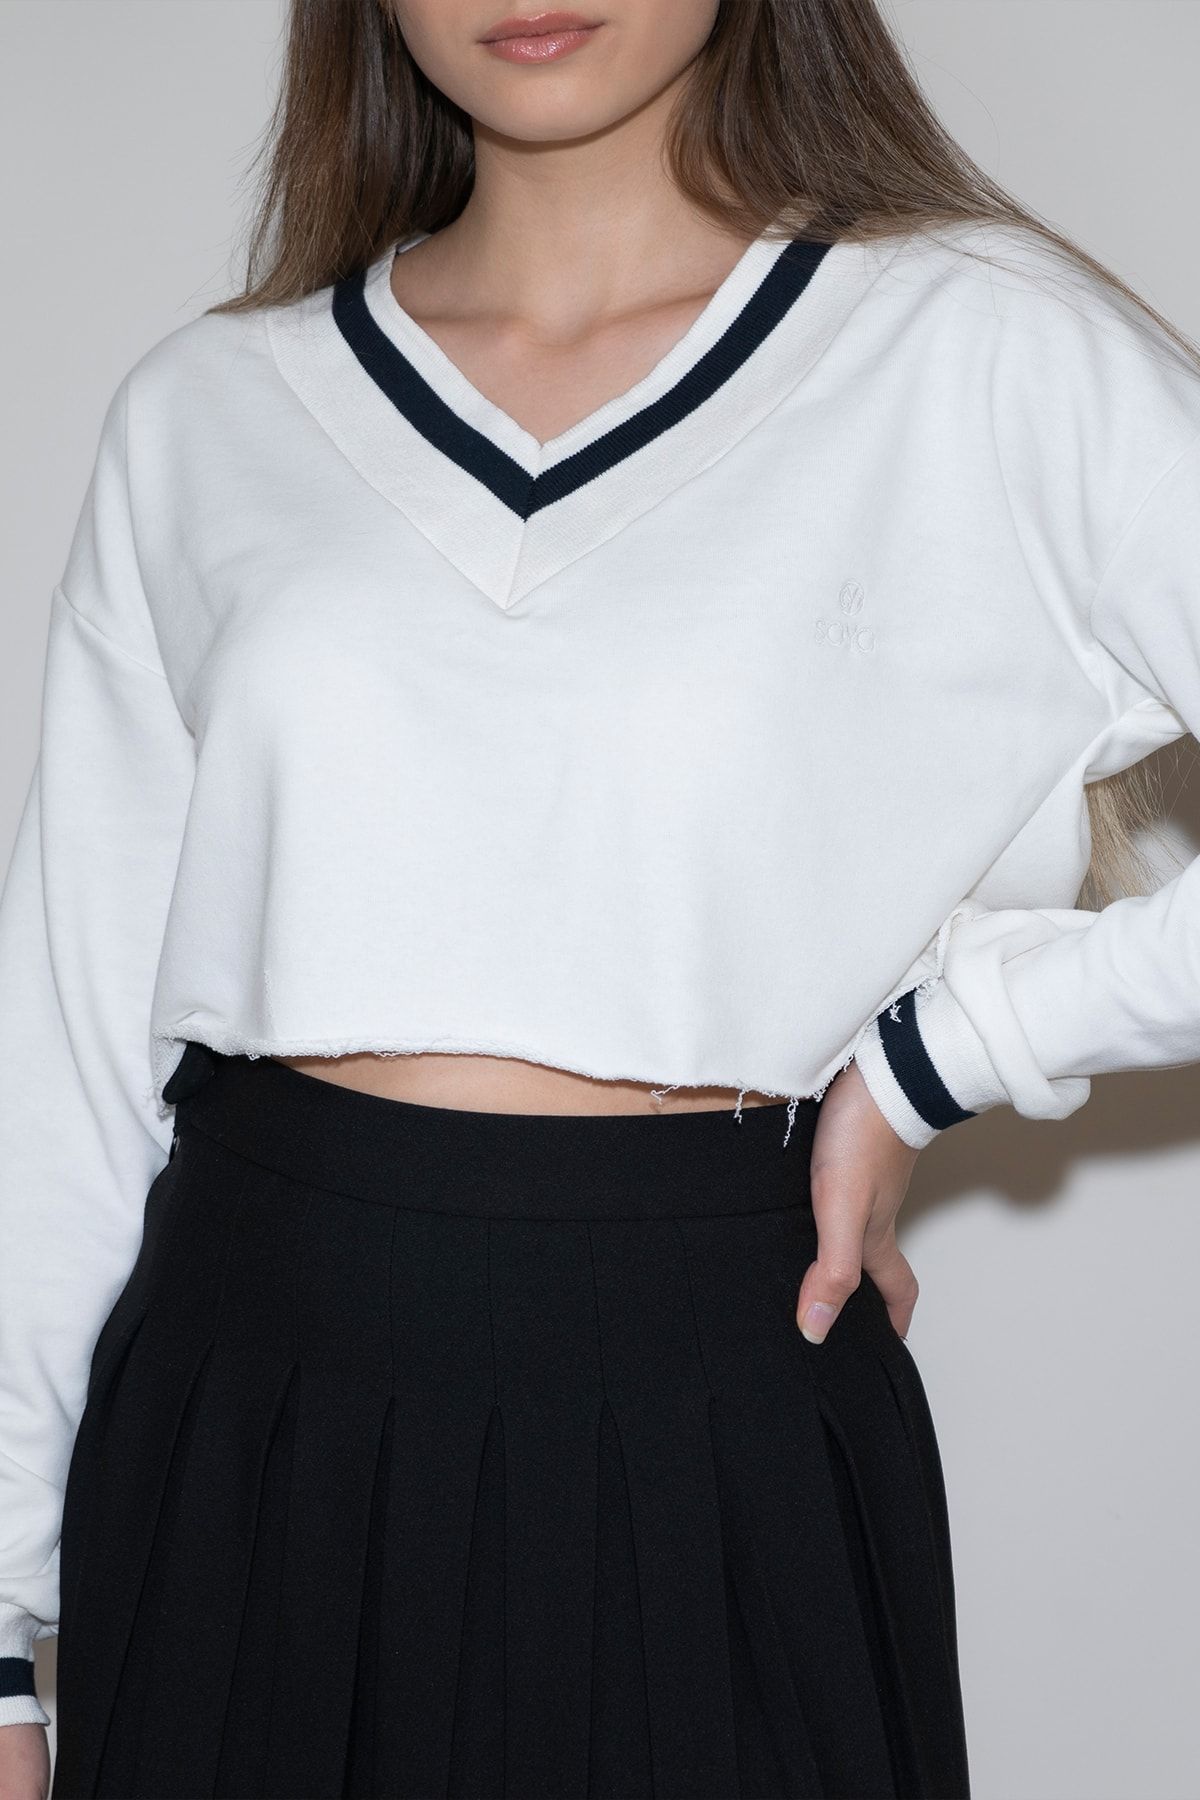 Soyo Kadın Beyaz Yakası Ve Kolu Şeritli Oversize Crop Sweatshirt